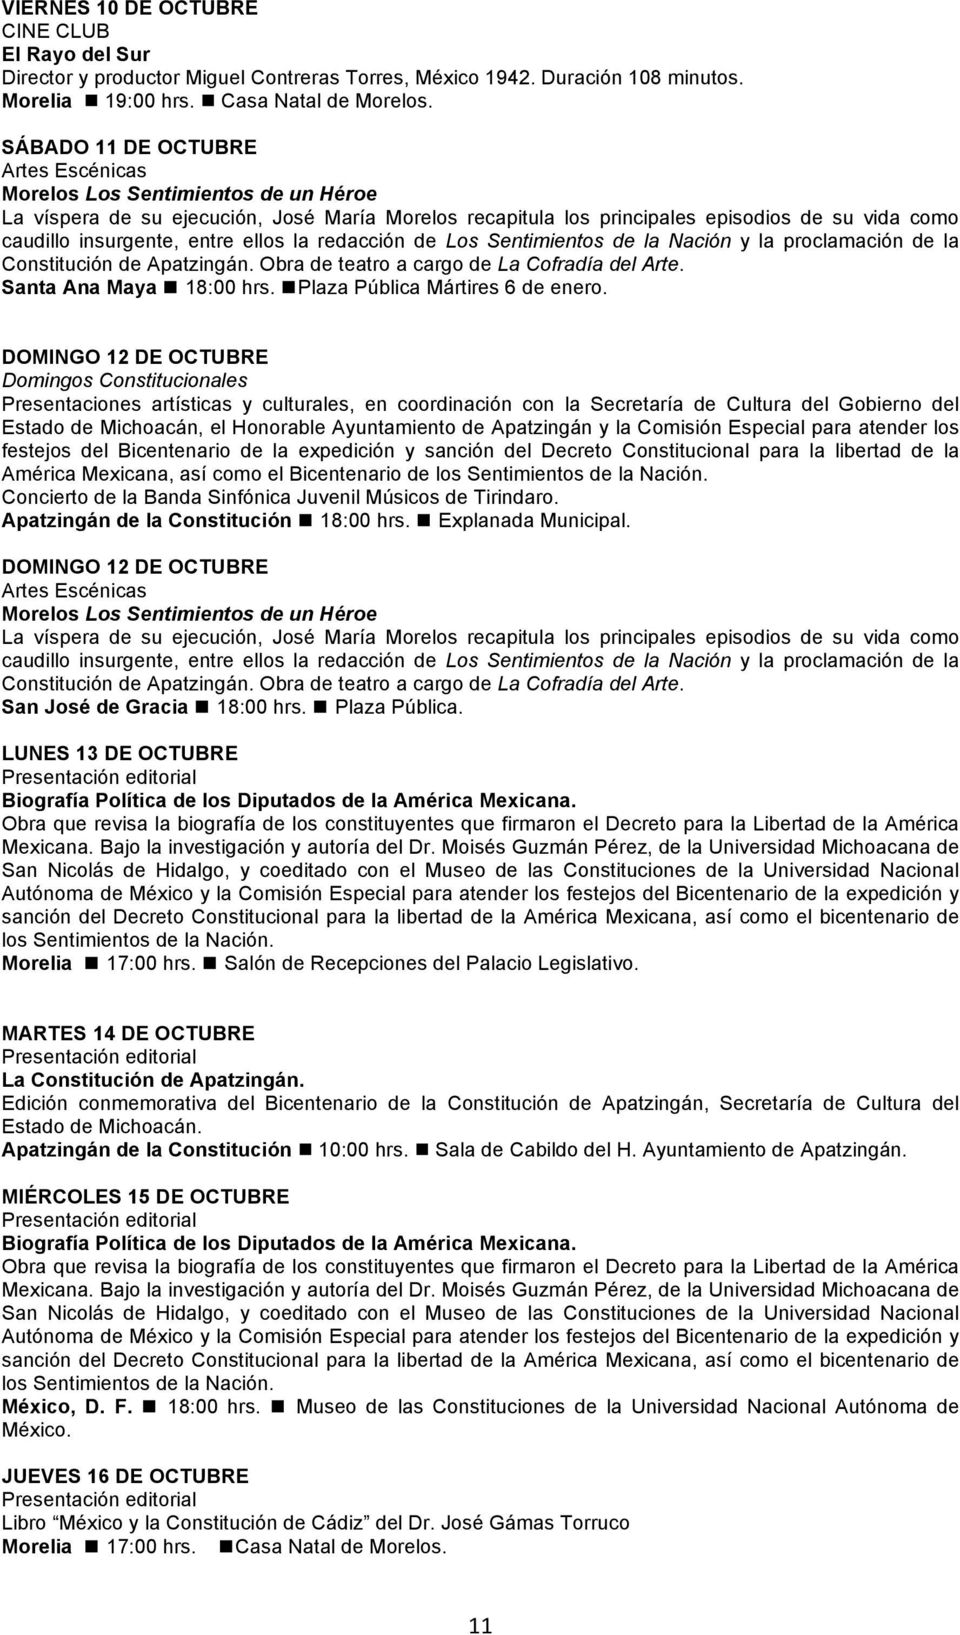 DOMINGO 12 DE OCTUBRE Domingos Constitucionales Presentaciones artísticas y culturales, en coordinación con la Secretaría de Cultura del Gobierno del Estado de Michoacán, el Honorable Ayuntamiento de